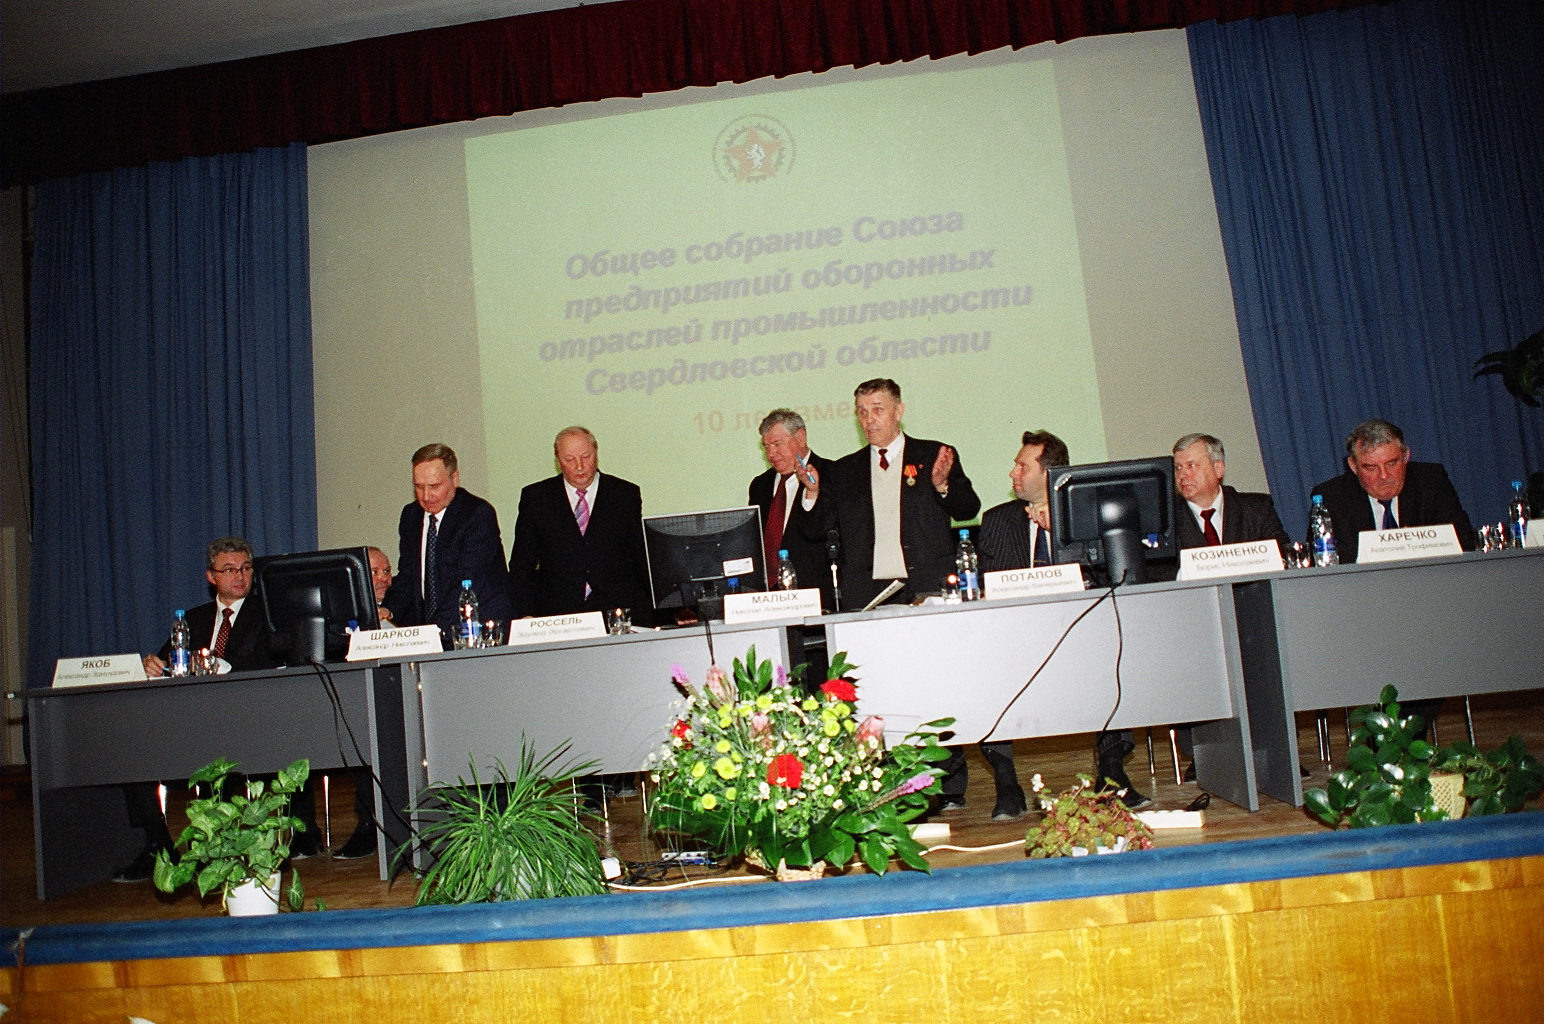 день образования Союза предприятий оборонных отраслей промышленности Свердловской области 